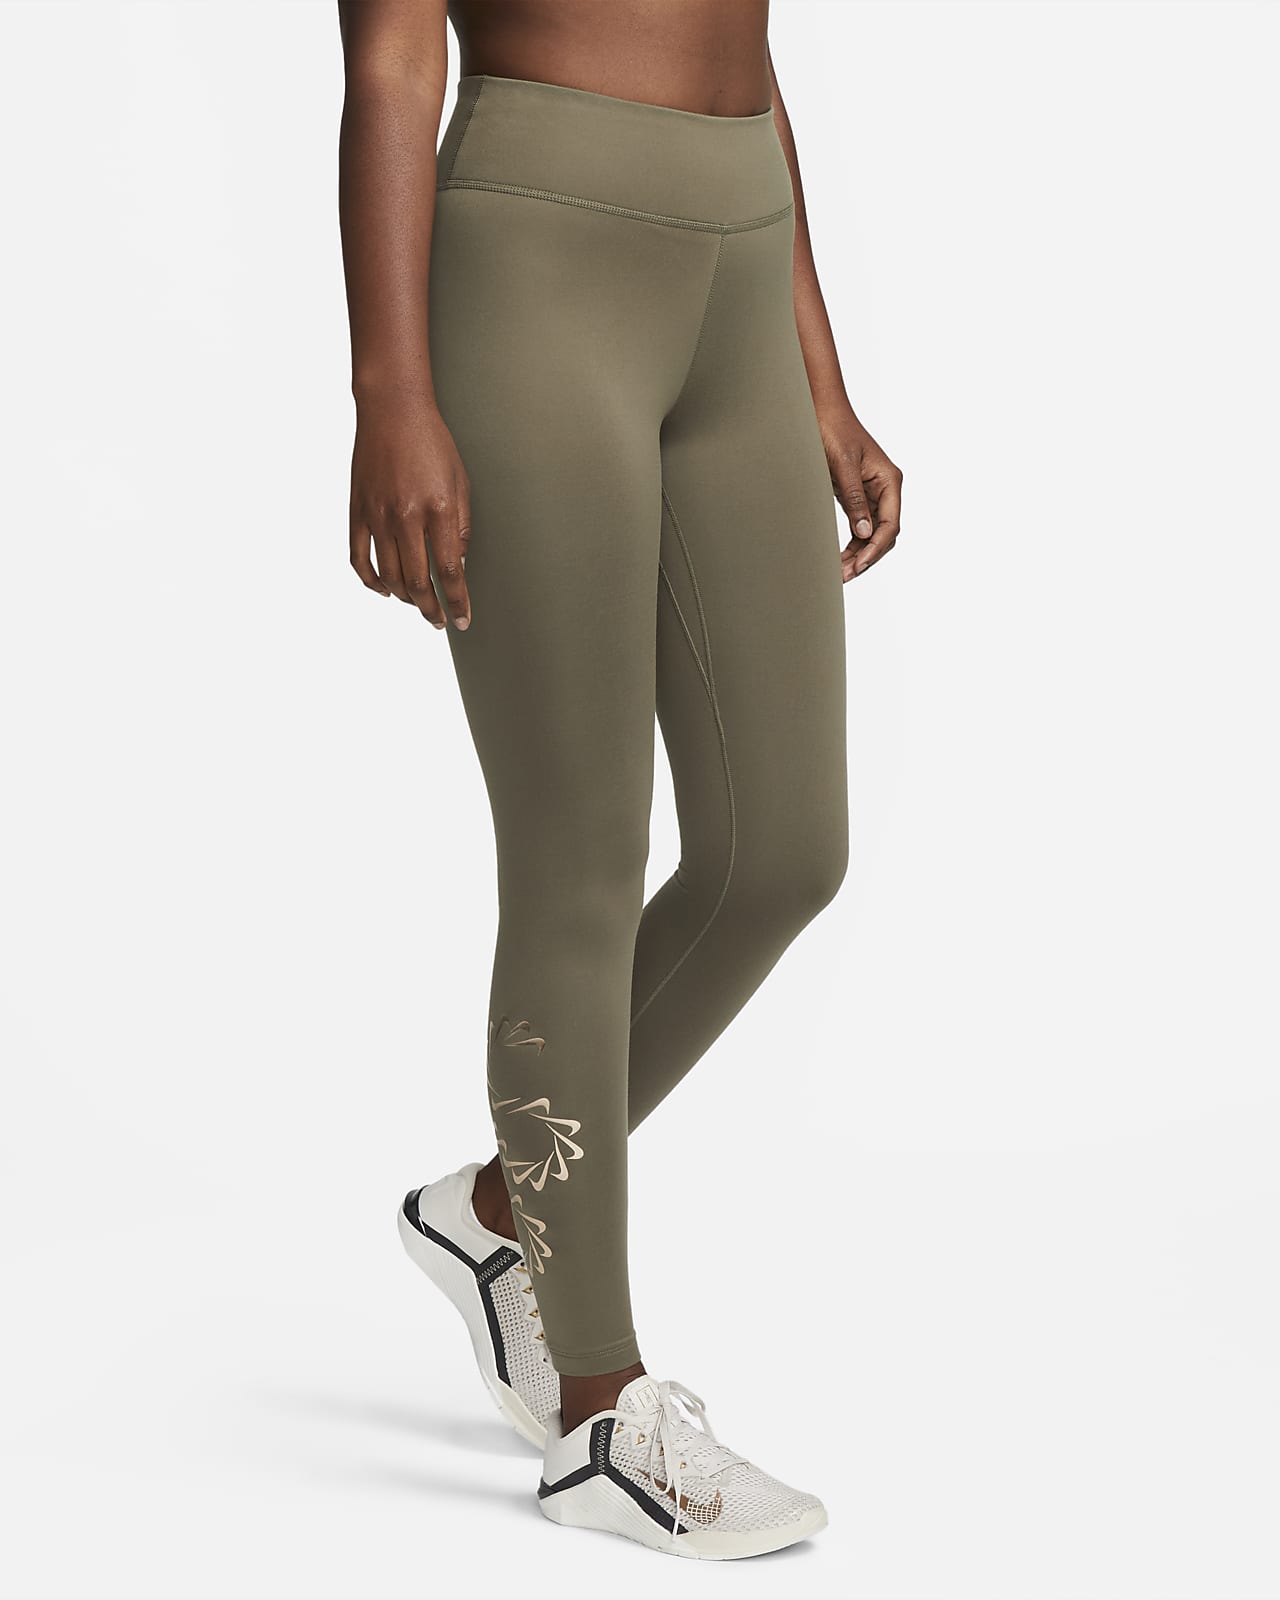 Γυναικείο κολάν προπόνησης μεσαίου ύψους με σχέδιο Nike Therma-FIT One